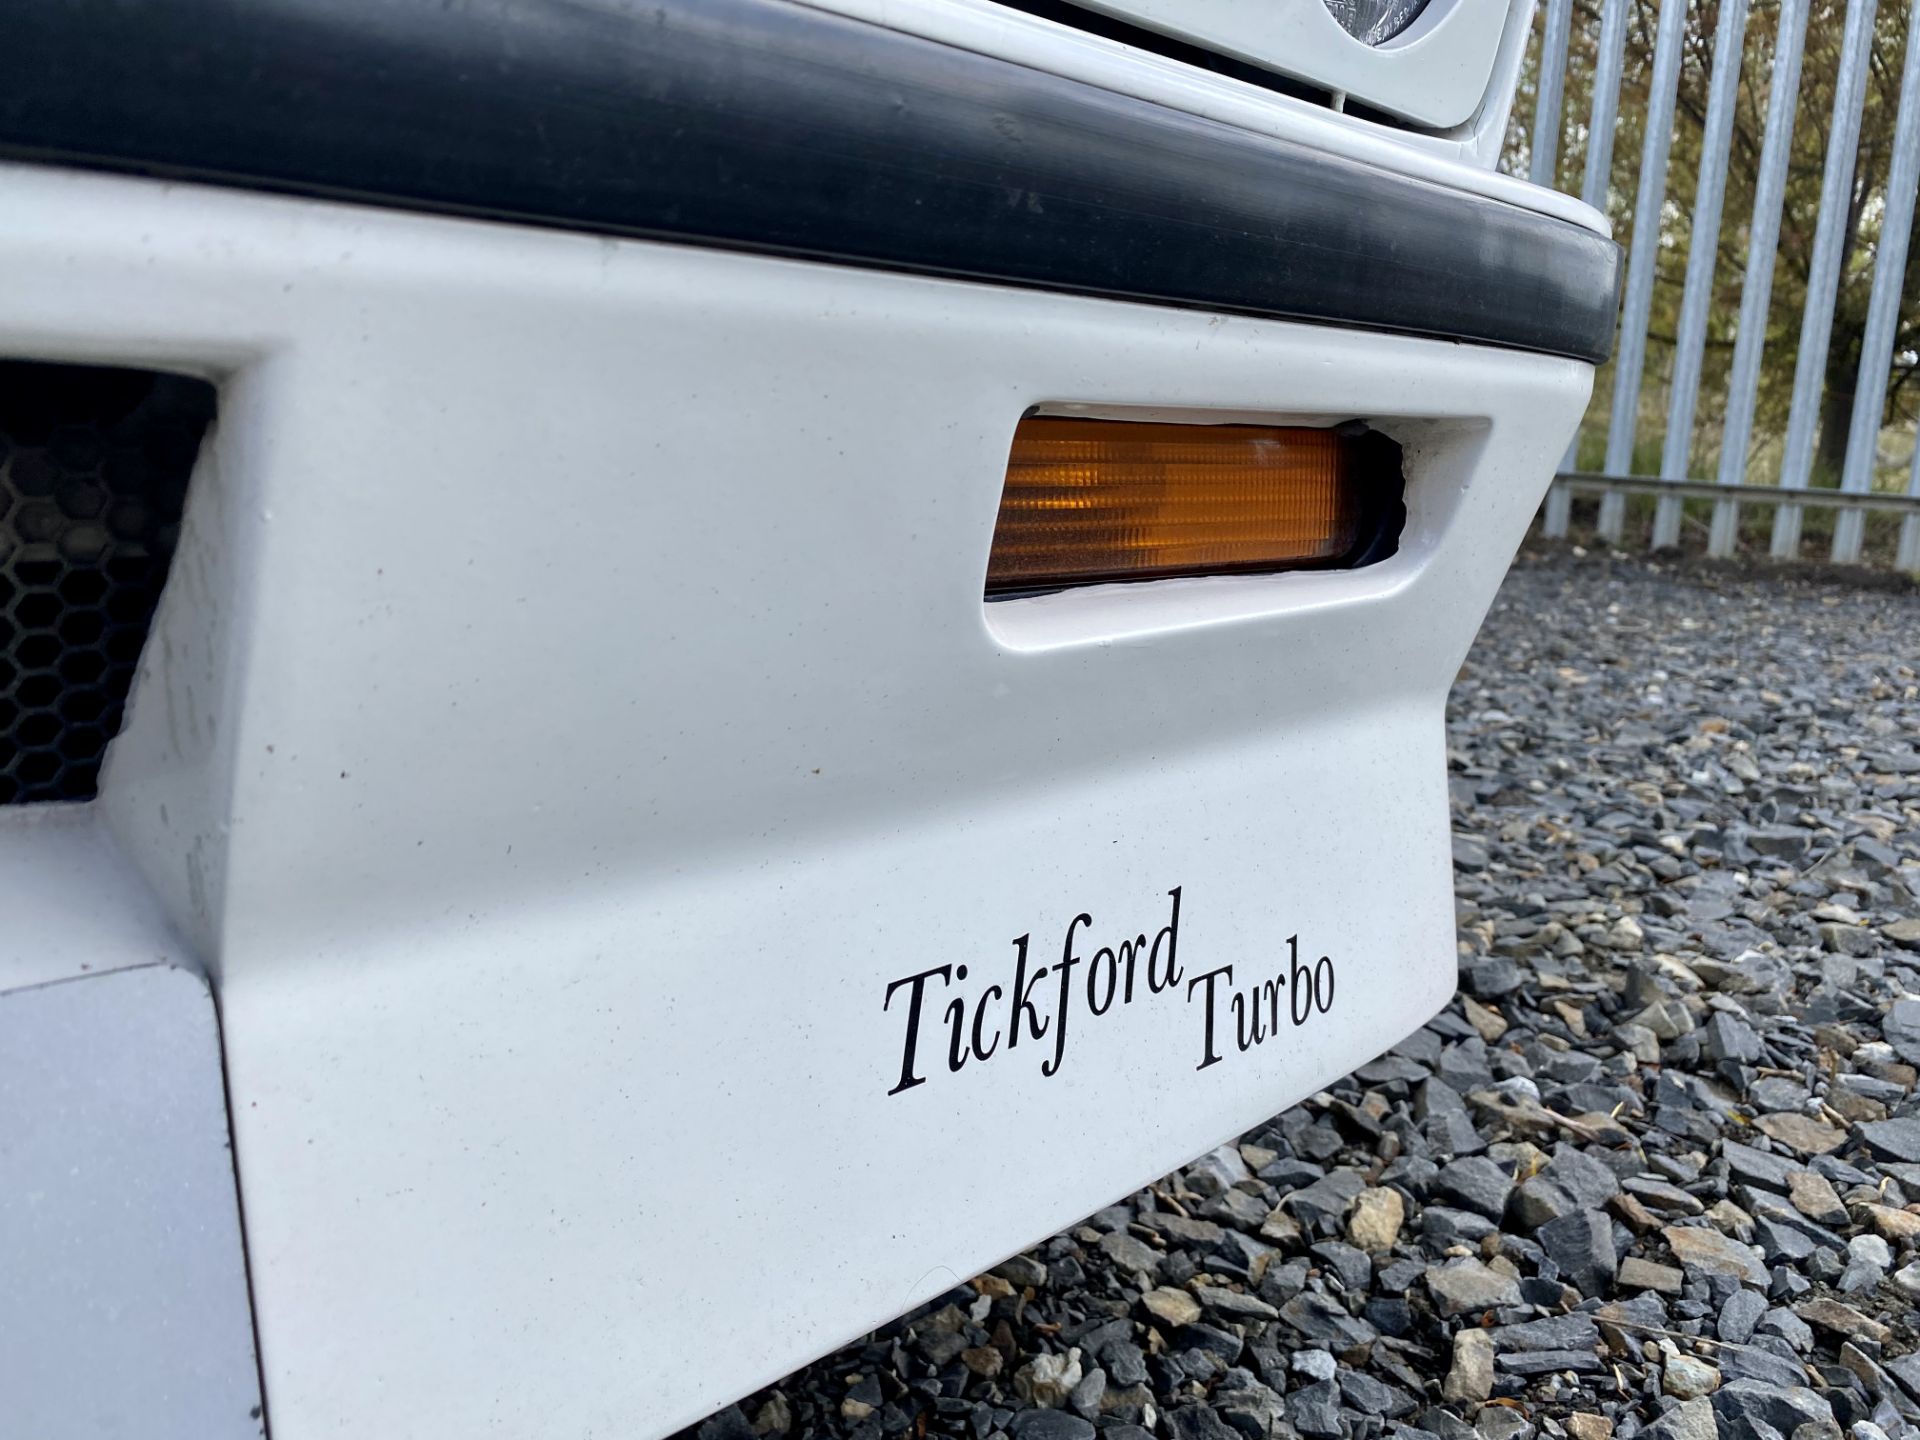 Ford Capri Tickford Turbo - Image 23 of 62